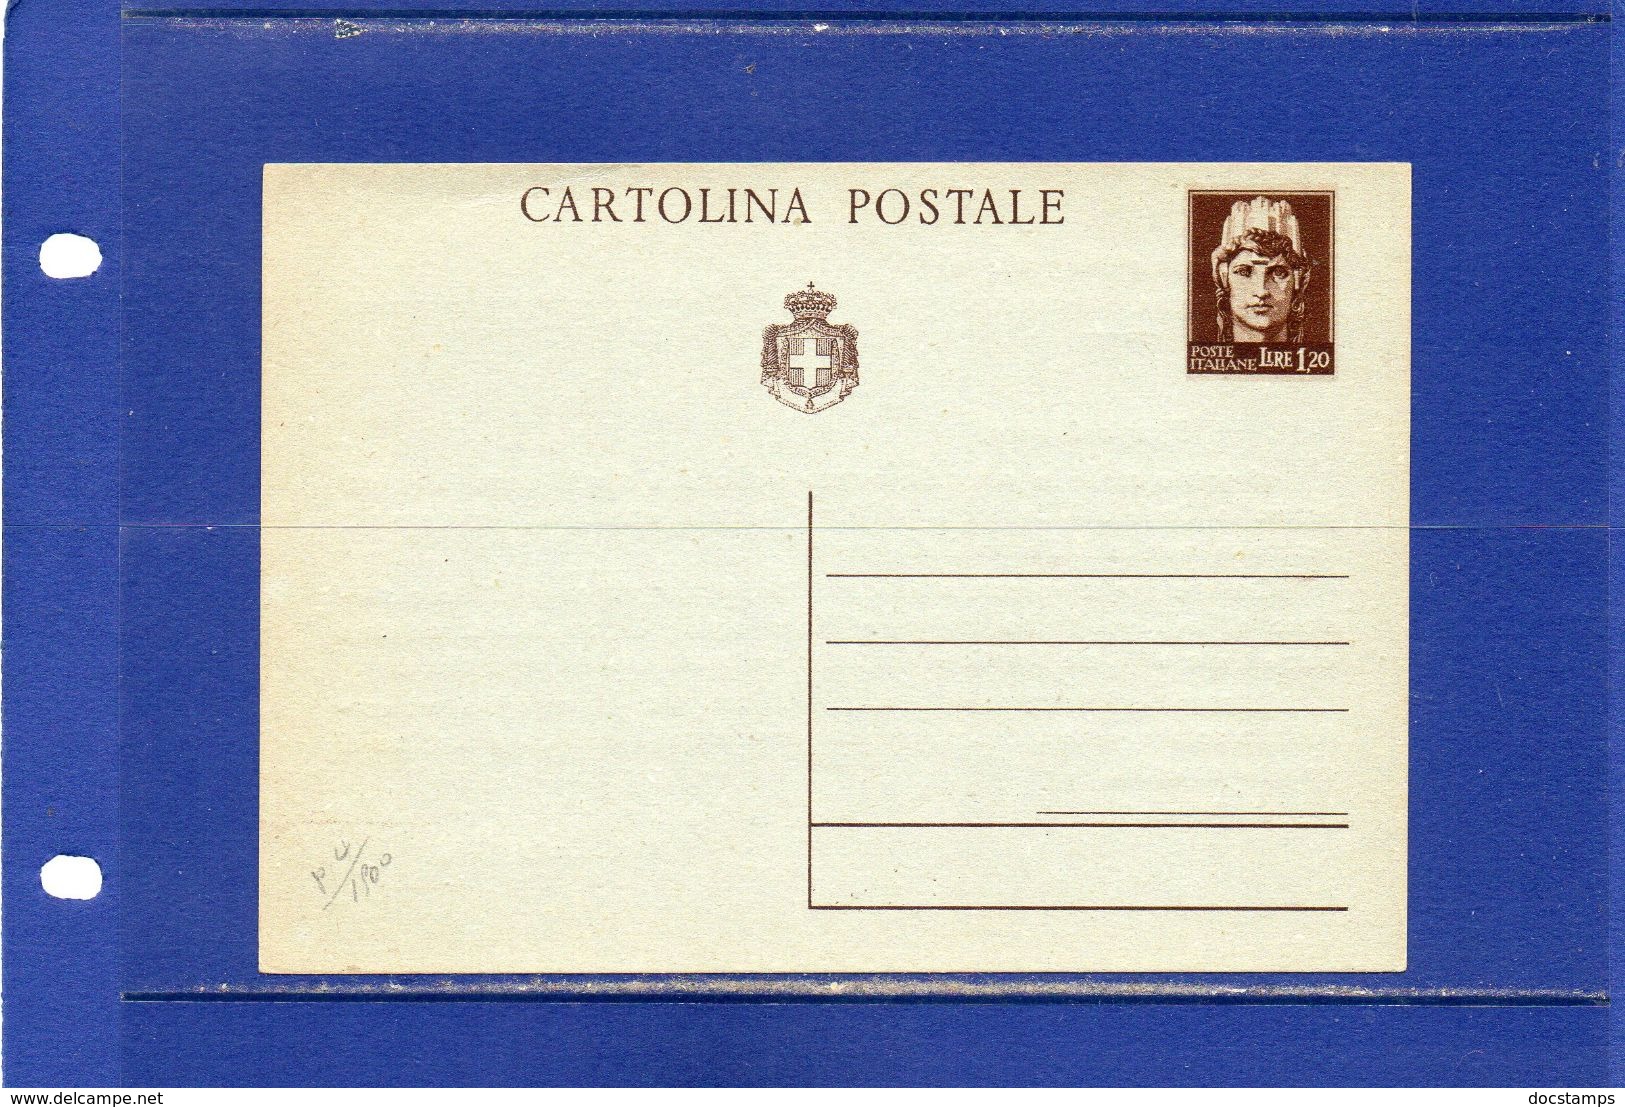 ##(DAN183)-Italia - Cartolina Postale Lire 1,20 Con Stampa Privata Al Verso - Nuova - Interi Postali